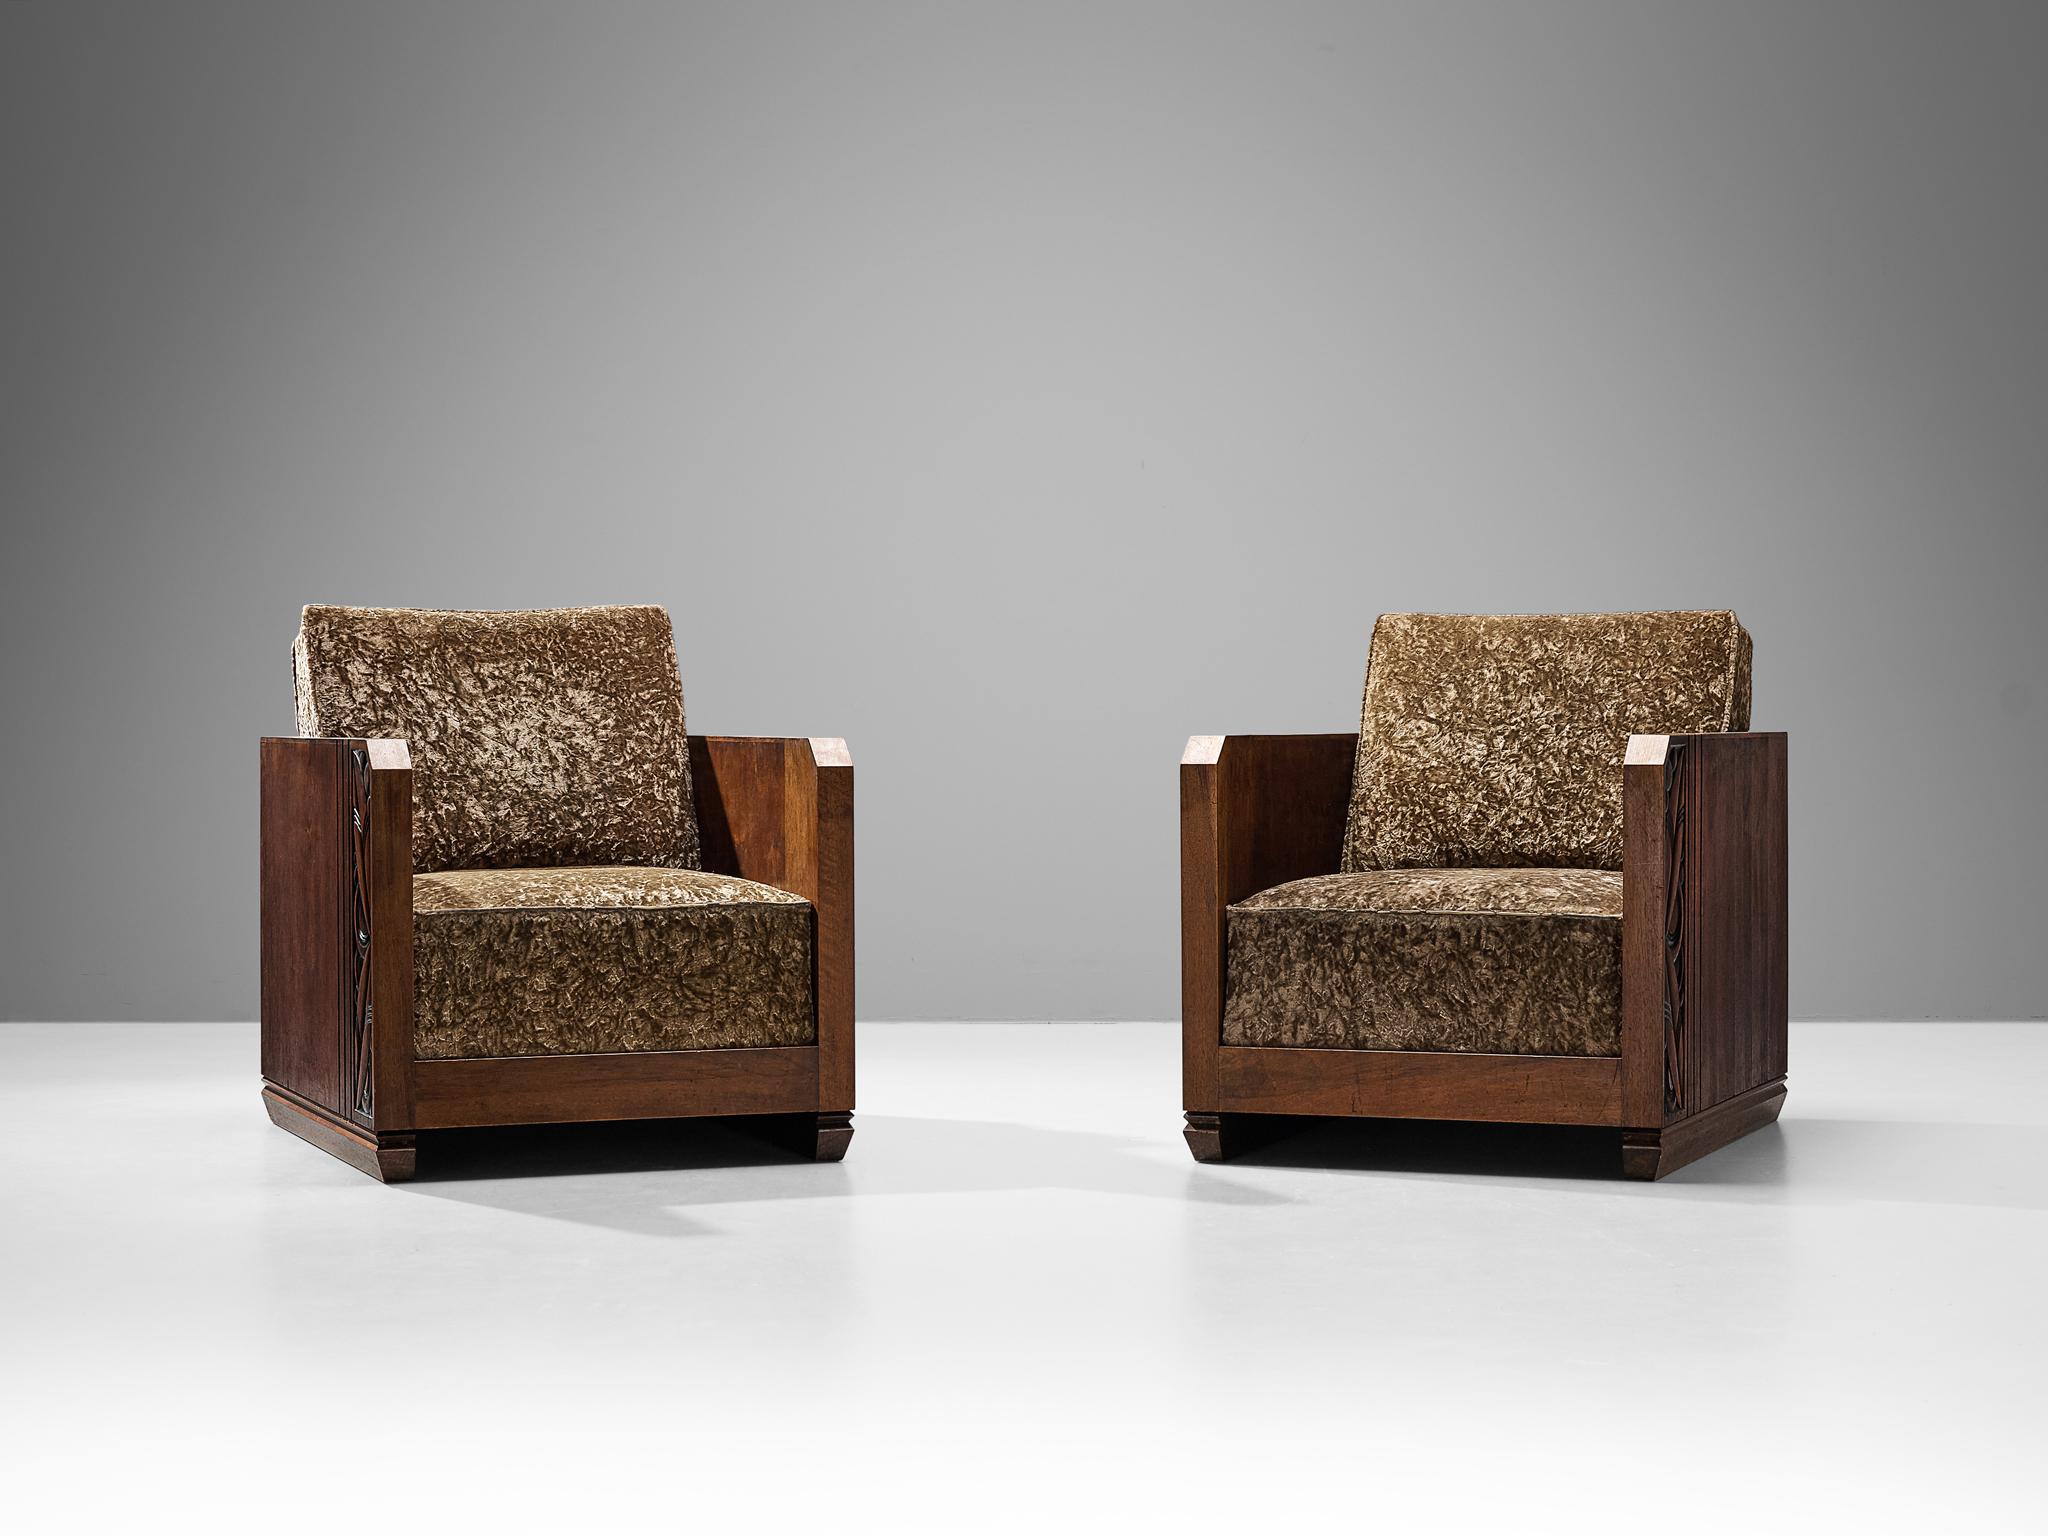 Paar Sessel, Mahagoni, Samt, Frankreich, 1920er Jahre

Die außergewöhnliche handwerkliche Qualität und die Liebe zum Detail, die in diesen Sesseln zum Ausdruck kommen, sorgen dafür, dass diese Sessel einen Platz im Herzen der Einrichtung finden.